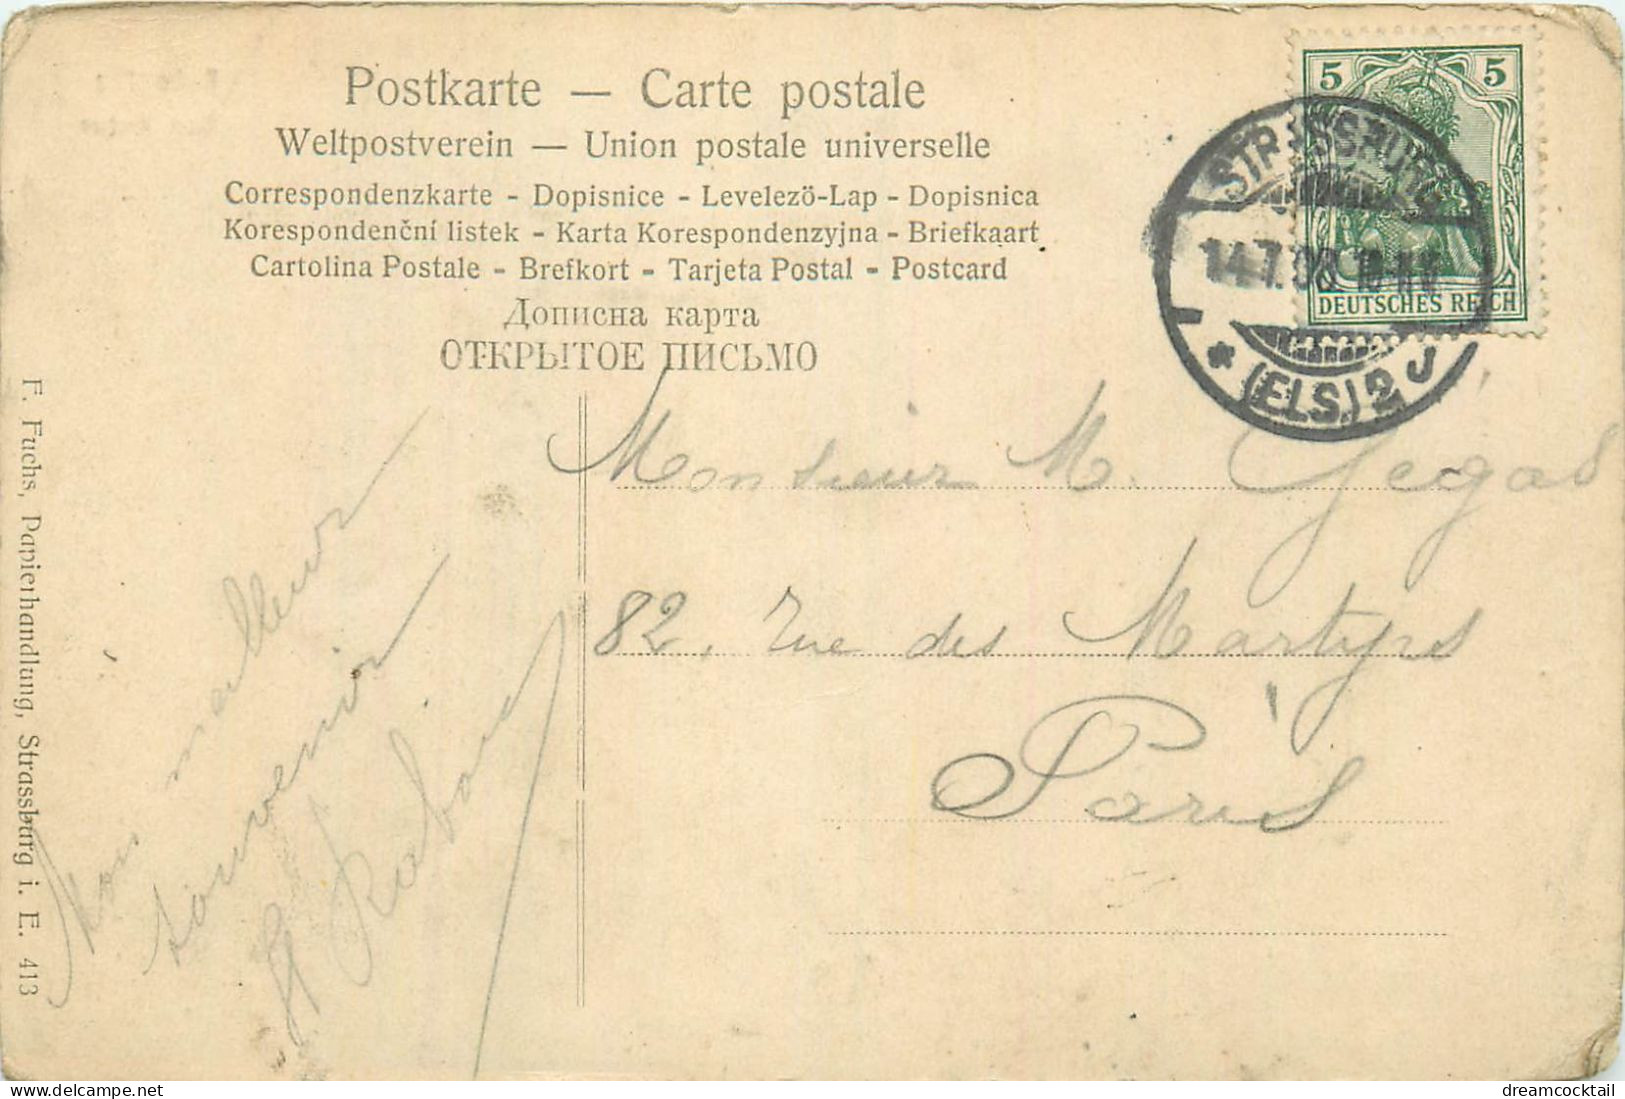 (S) Superbe LOT n°17 de 50 cartes postales anciennes Françaises régionalisme